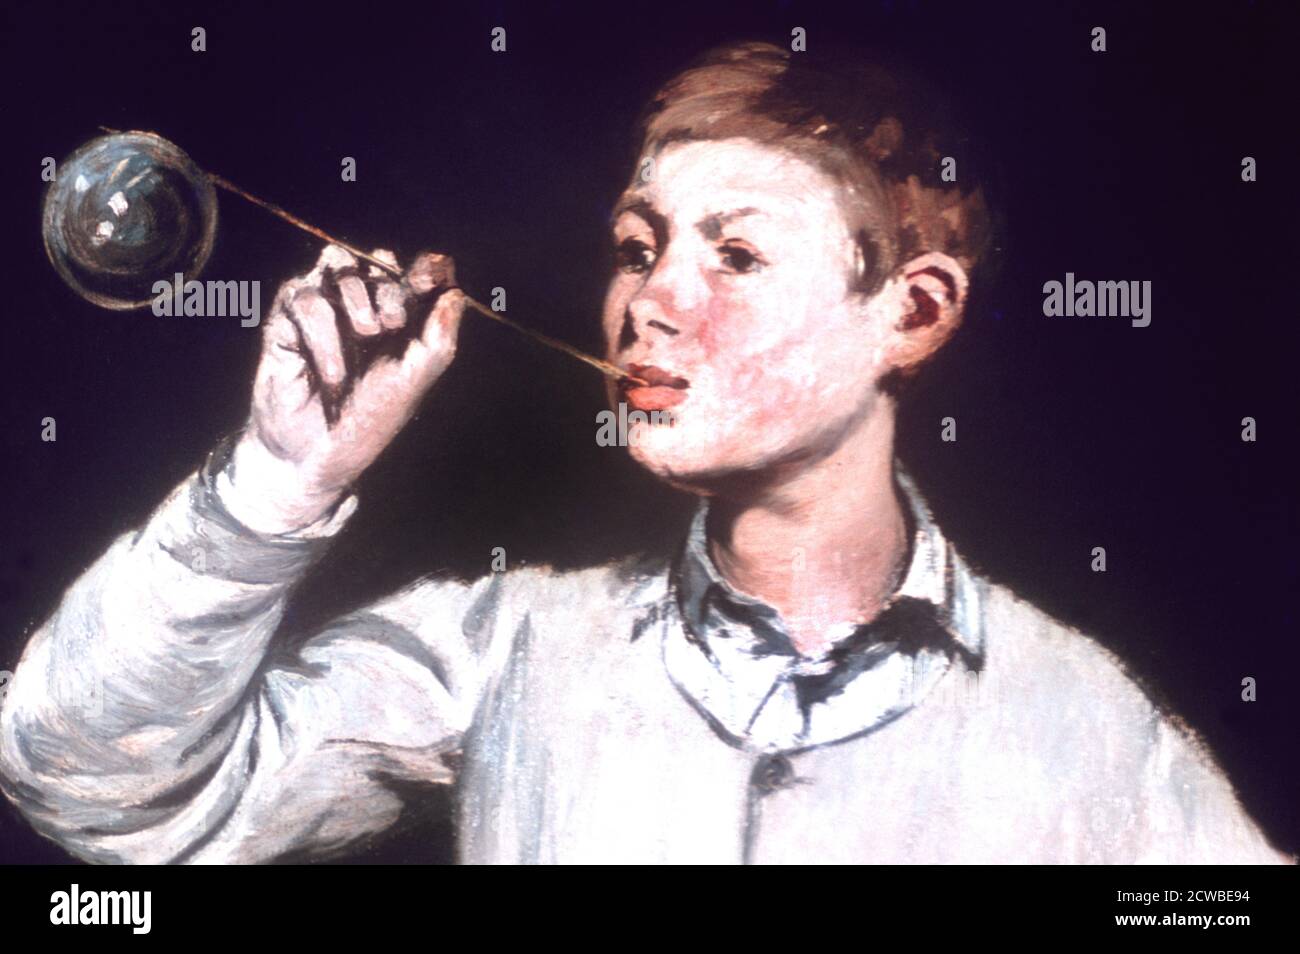 Boy Blowing Bubbles', Detail, 1867, Artist: Edouard Manet. Edouard Manet (1832-1883) è stato un pittore modernista francese. Fu uno dei primi artisti del XIX secolo a dipingere la vita moderna. Foto Stock